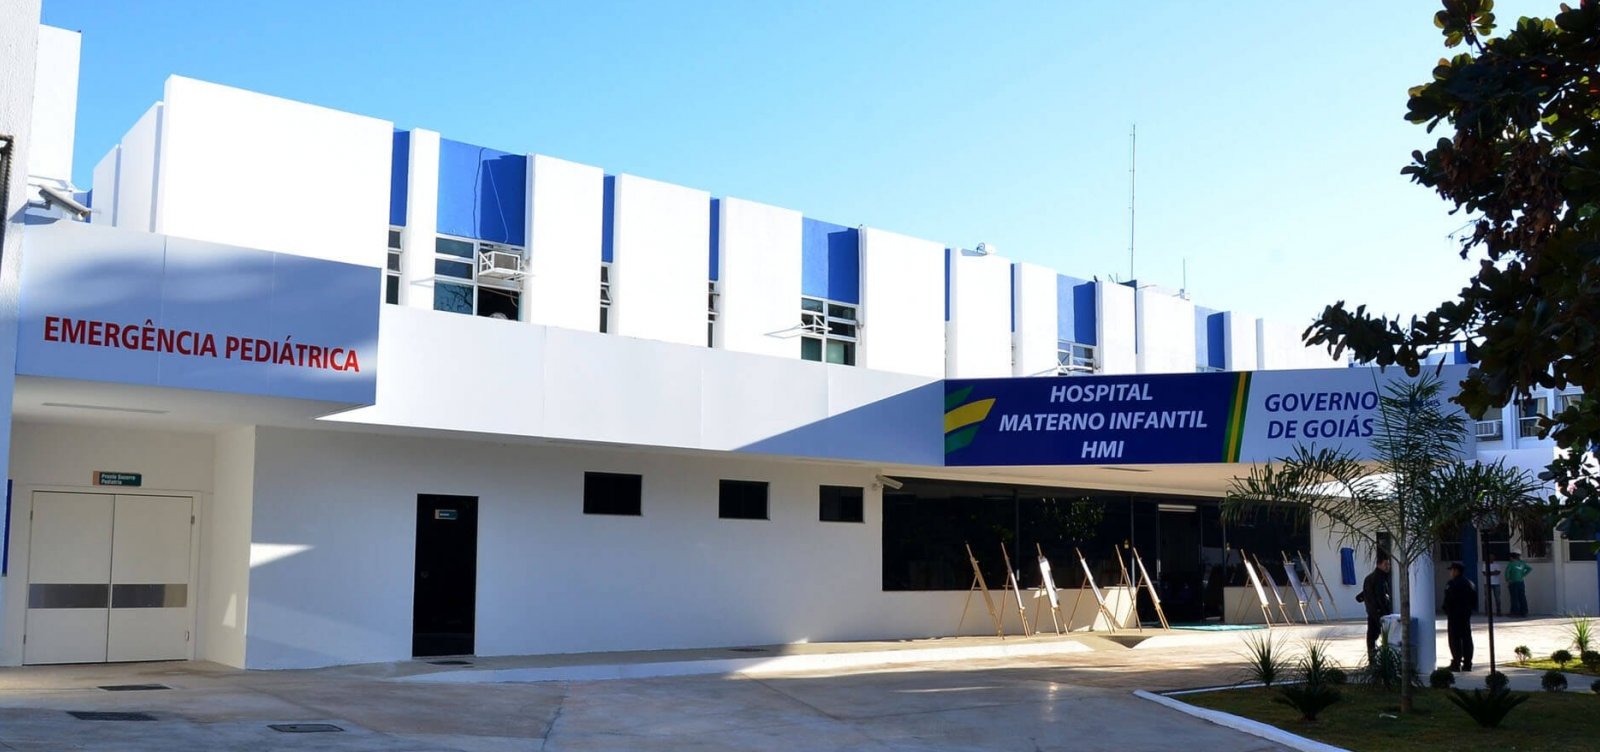 Gêmeas siamesas nascidas na Bahia são transferidas para hospital de Goiás